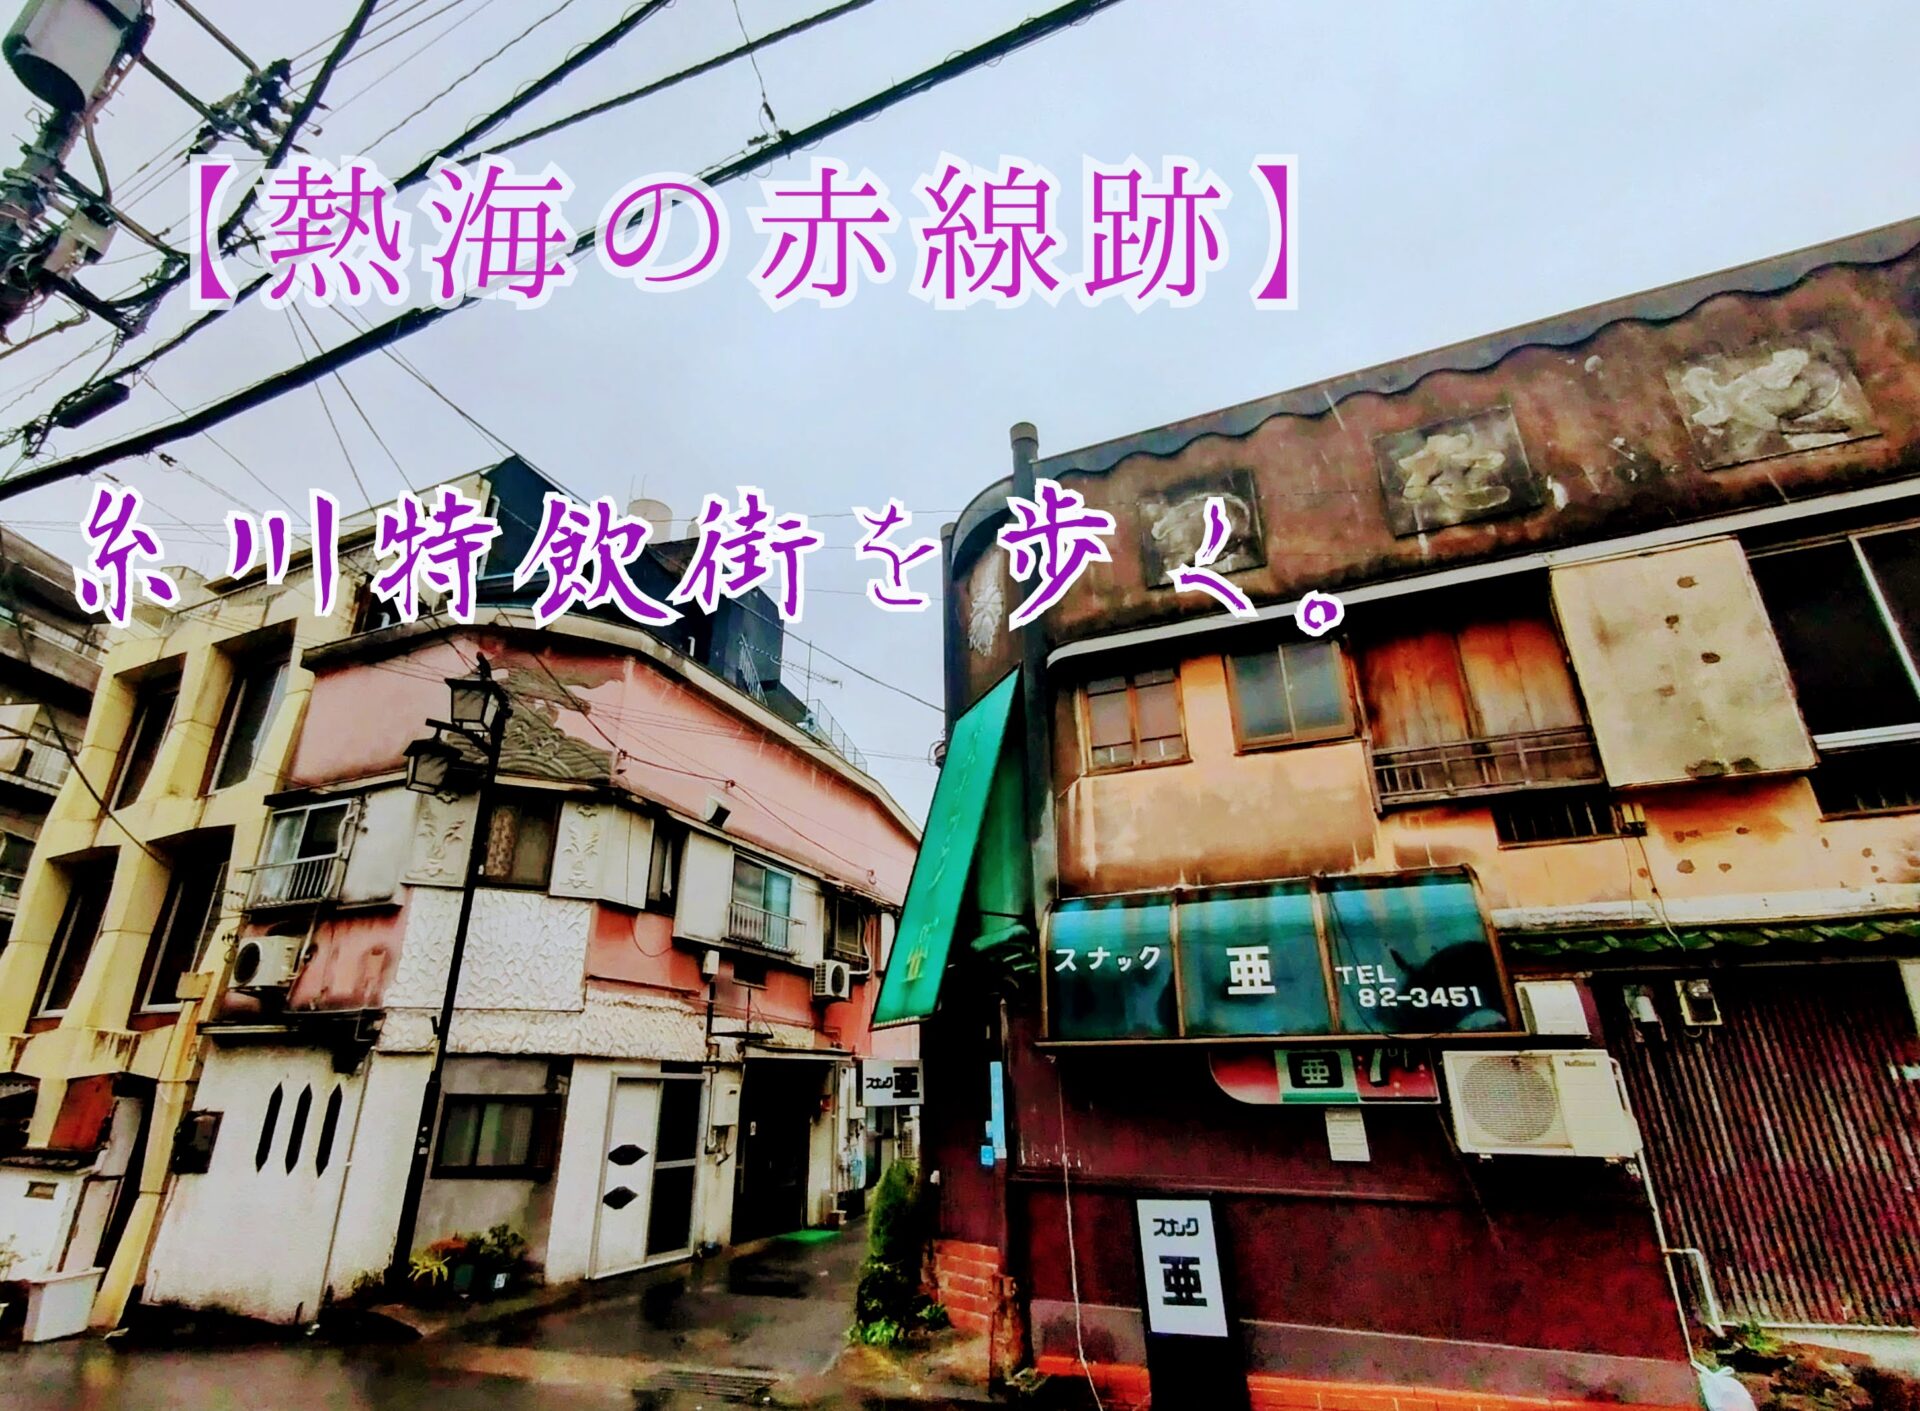 【熱海の赤線跡】糸川特飲街を歩く。【カフェー建築を探して】